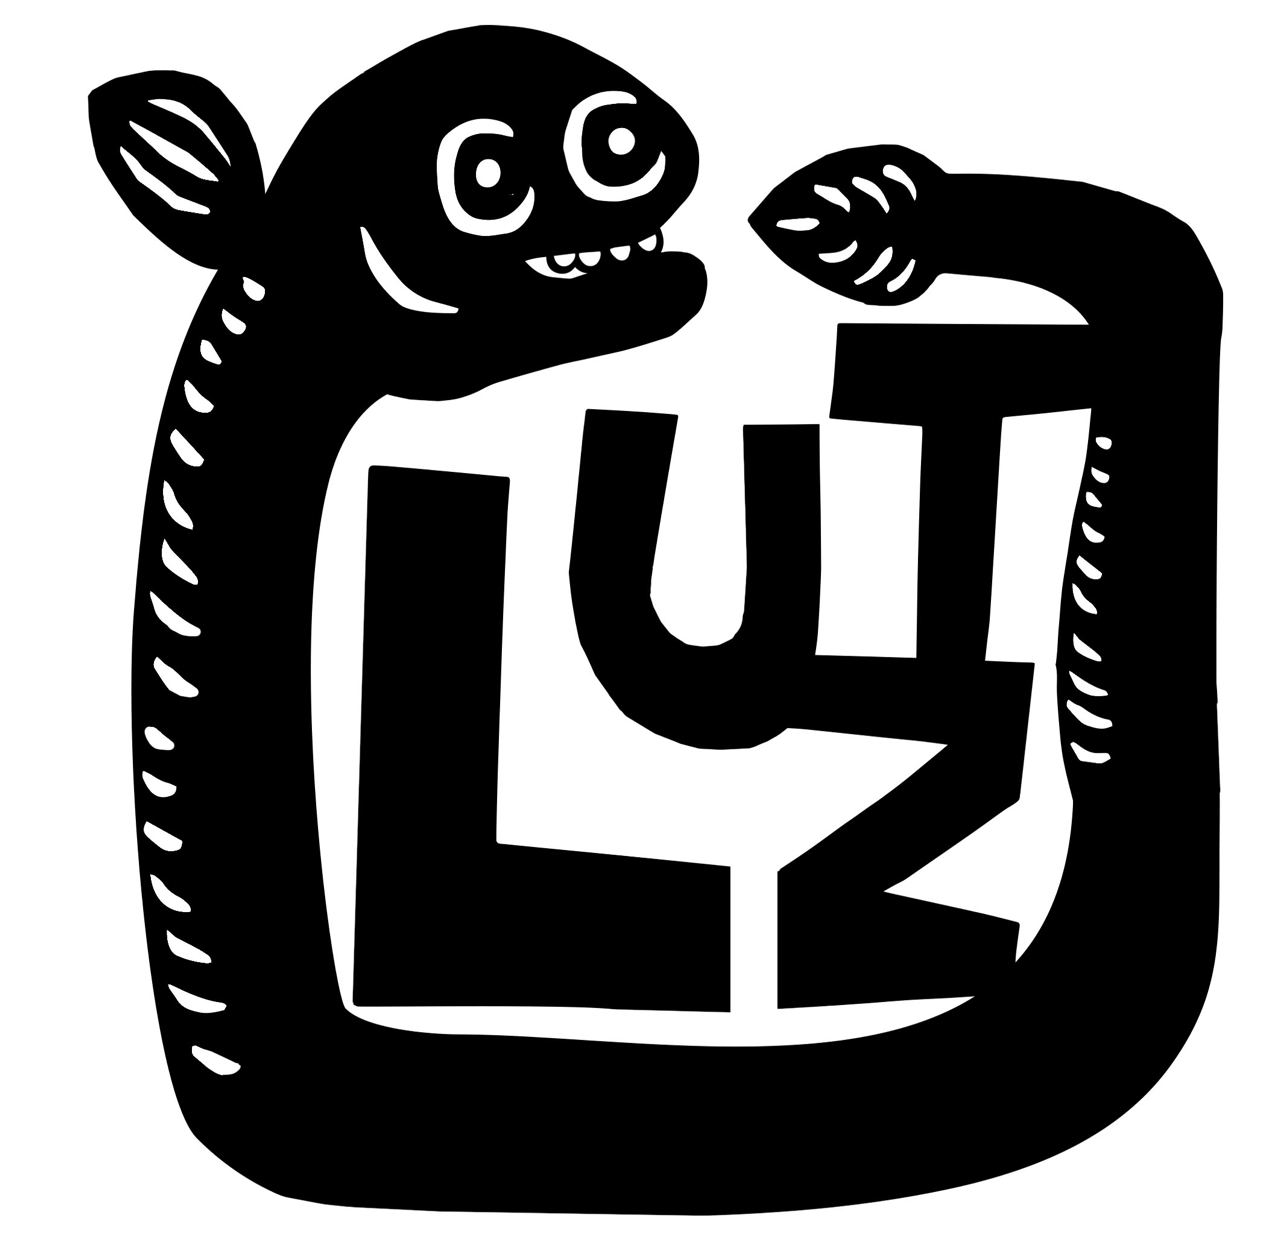 Lutz written with an eel